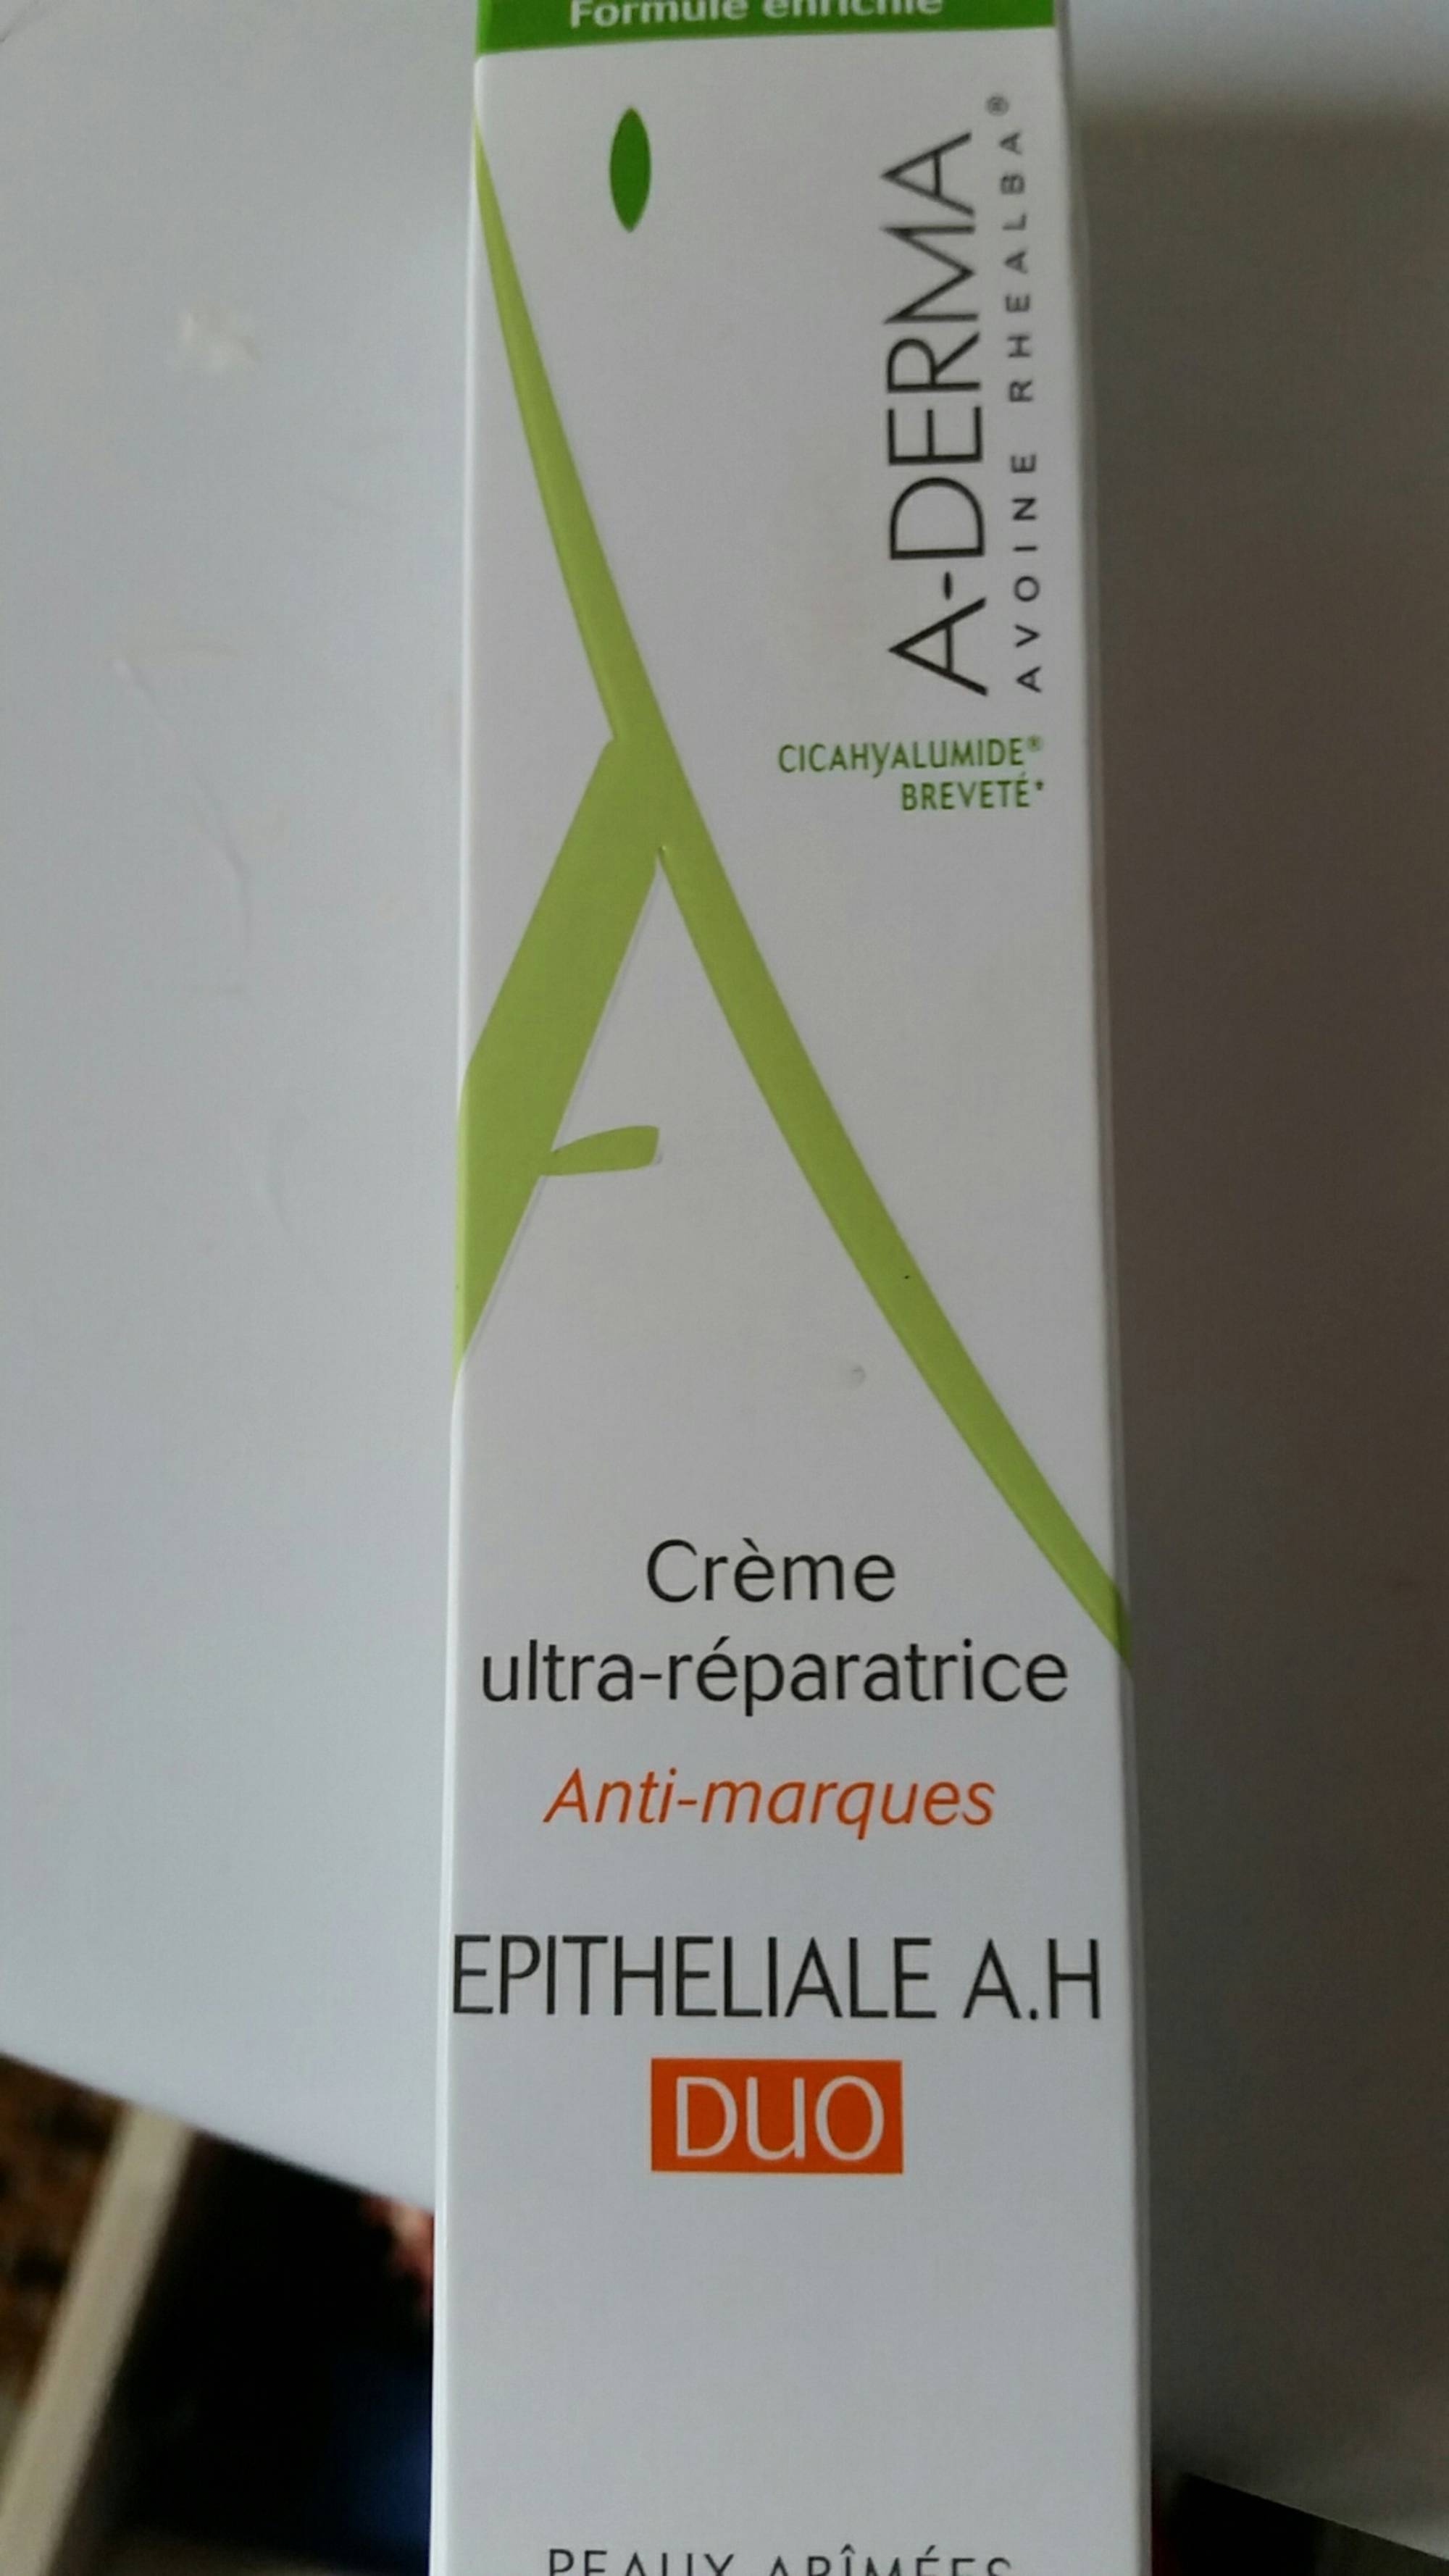 A-DERMA - Epitheliale A.H. duo - Crème ultra-réparatrice anti-marques 